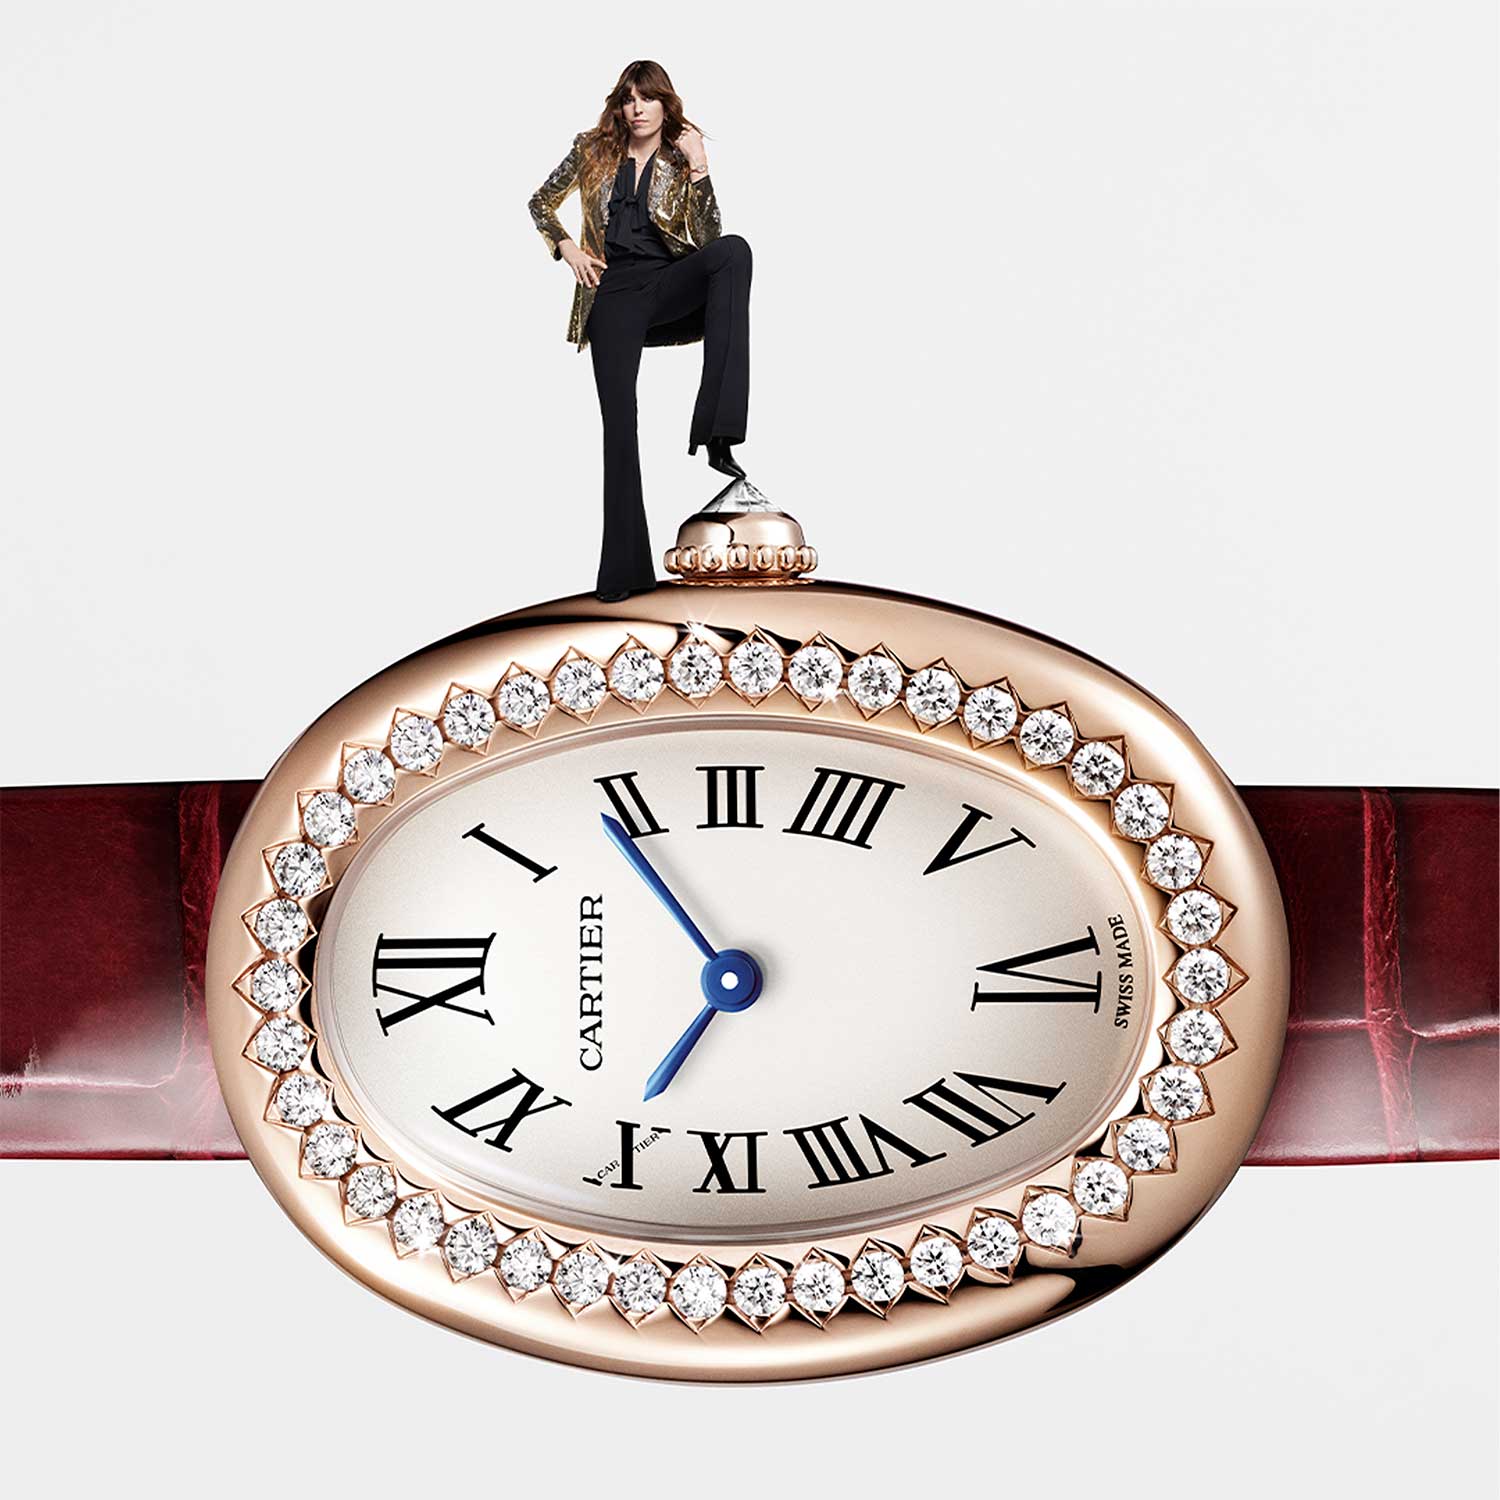 Đồng hồ Baignoire của Cartier với những đường cong gợi cảm